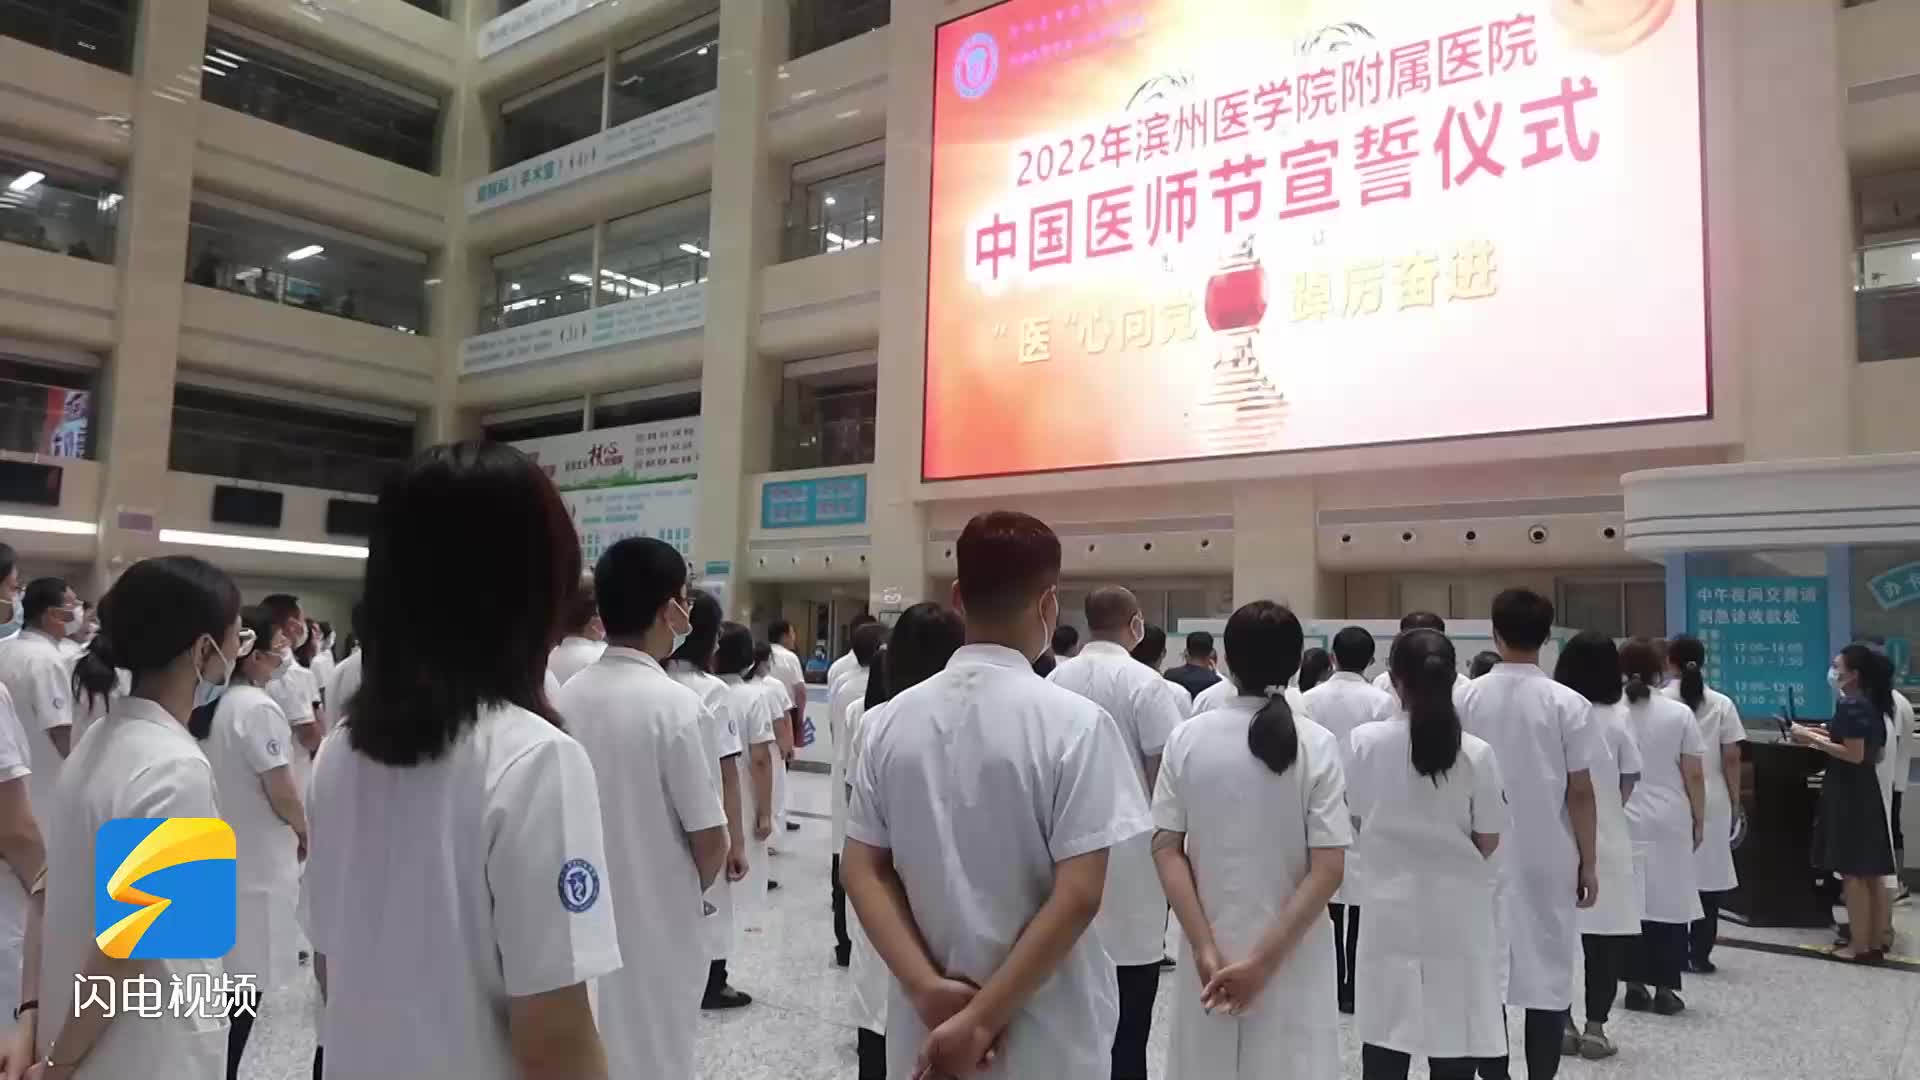 滨医附院举行2022年中国医师节“医师宣誓 廉洁行医签名” 活动